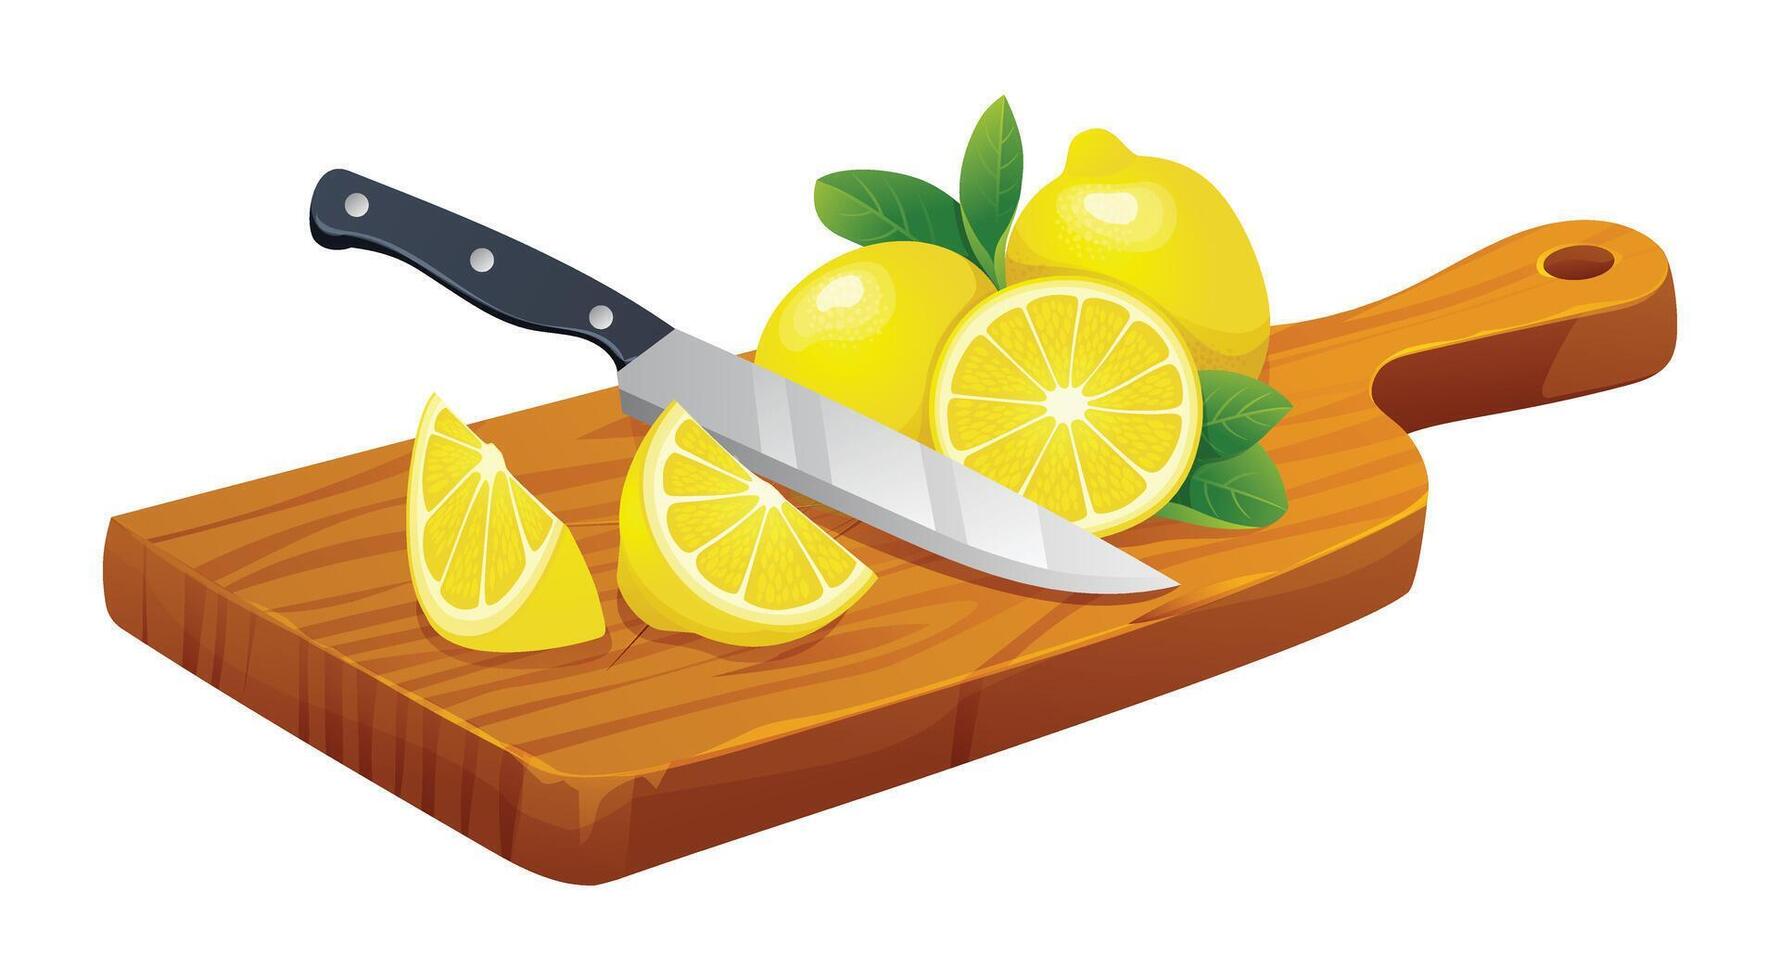 Frais ensemble, moitié et Couper tranches citron avec couteau sur Coupe planche. vecteur dessin animé illustration